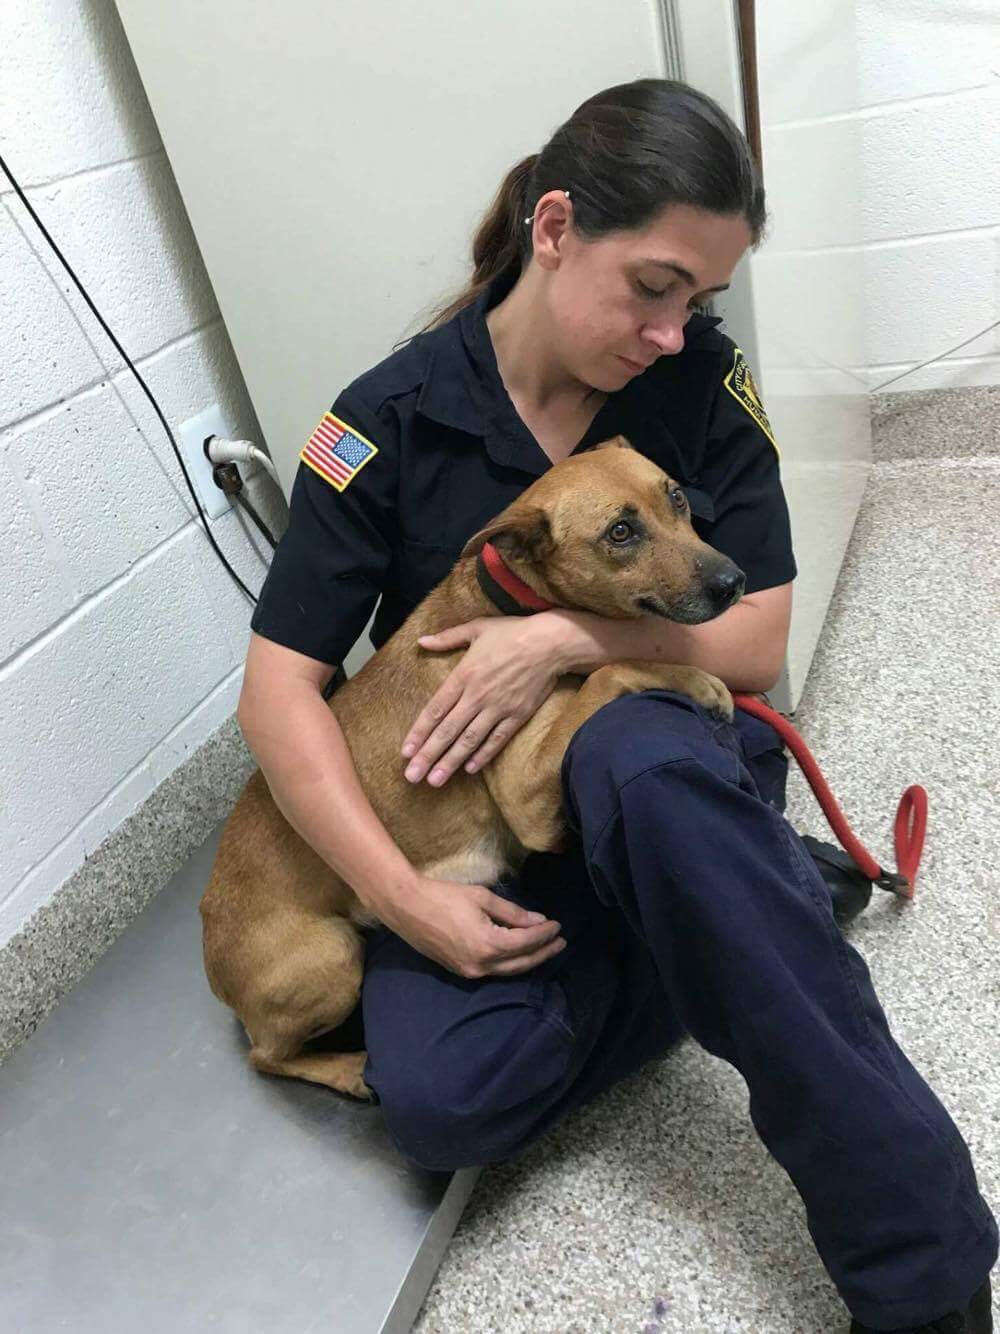 Officer holding rescued dog